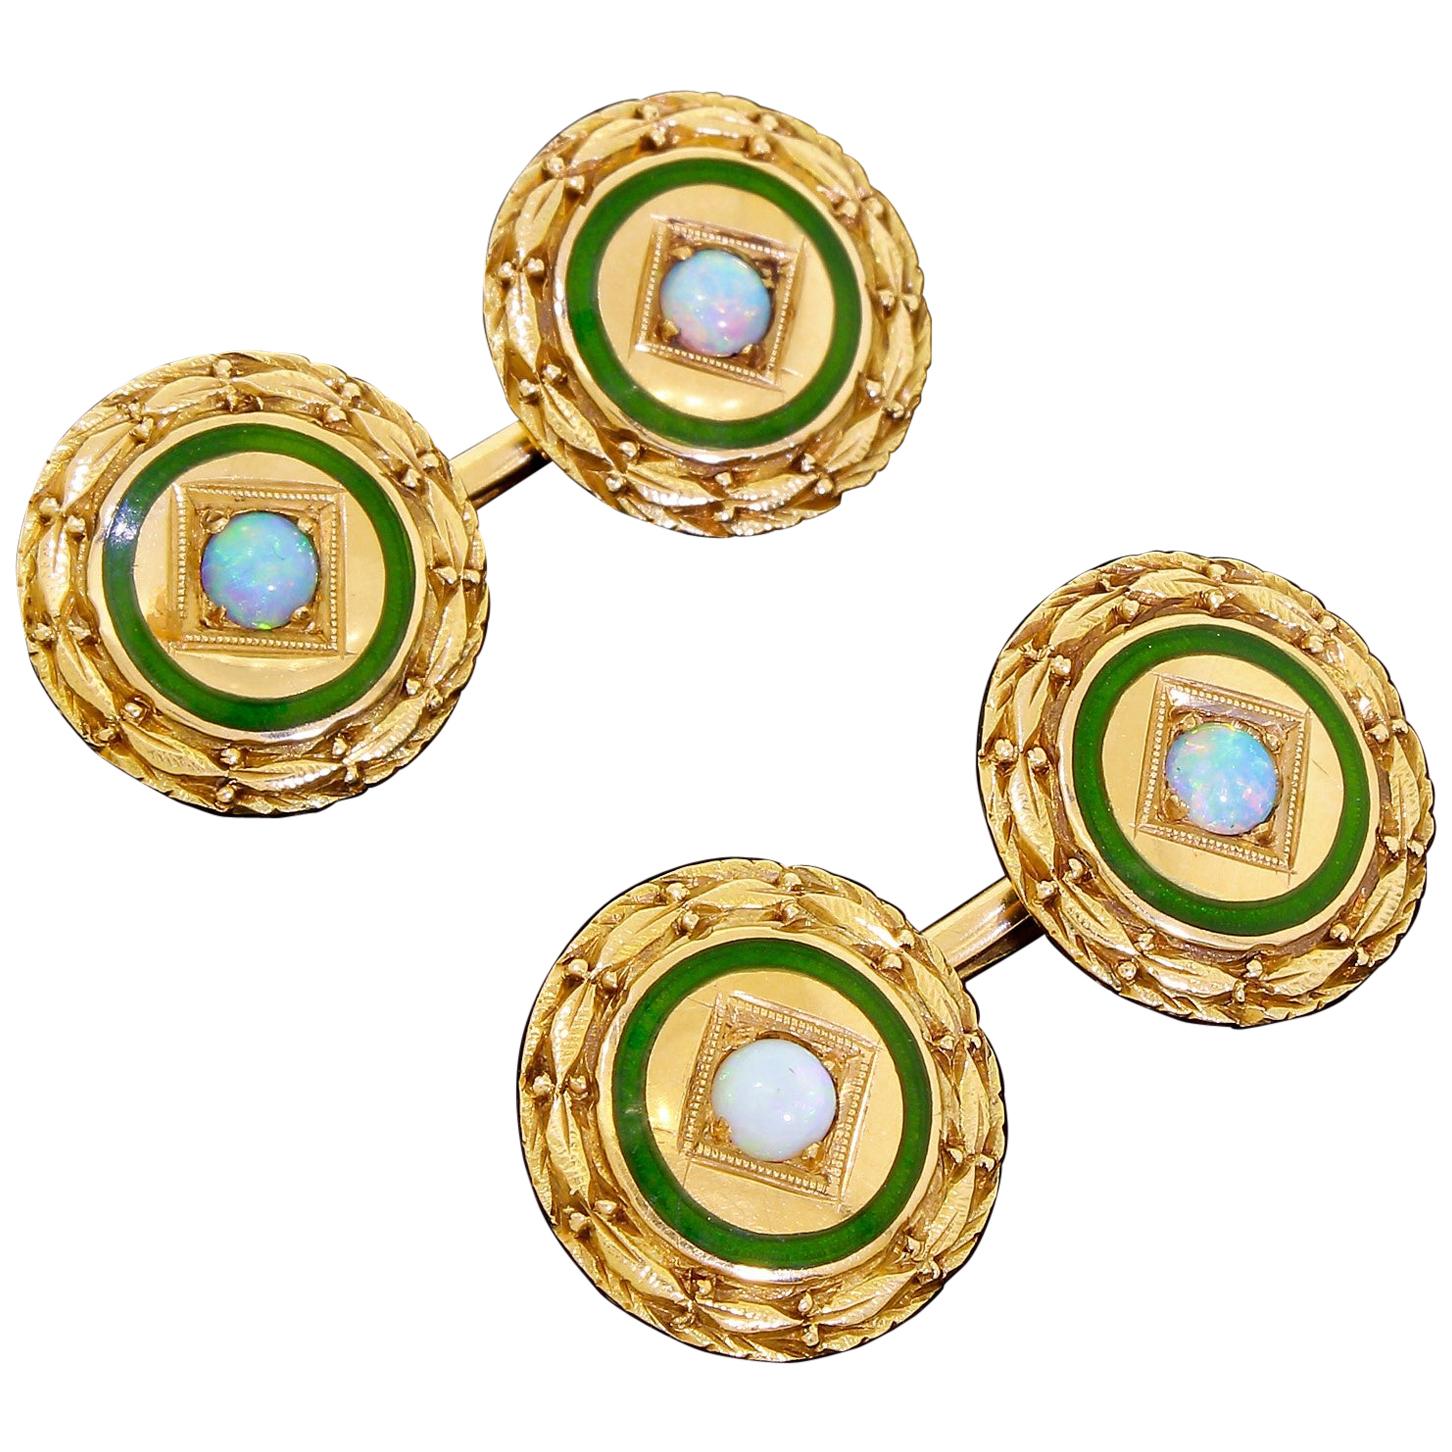 Antique Art Deco 14 Karat Gold Round Cufflinks Fire Opal and Blue Green Enamel